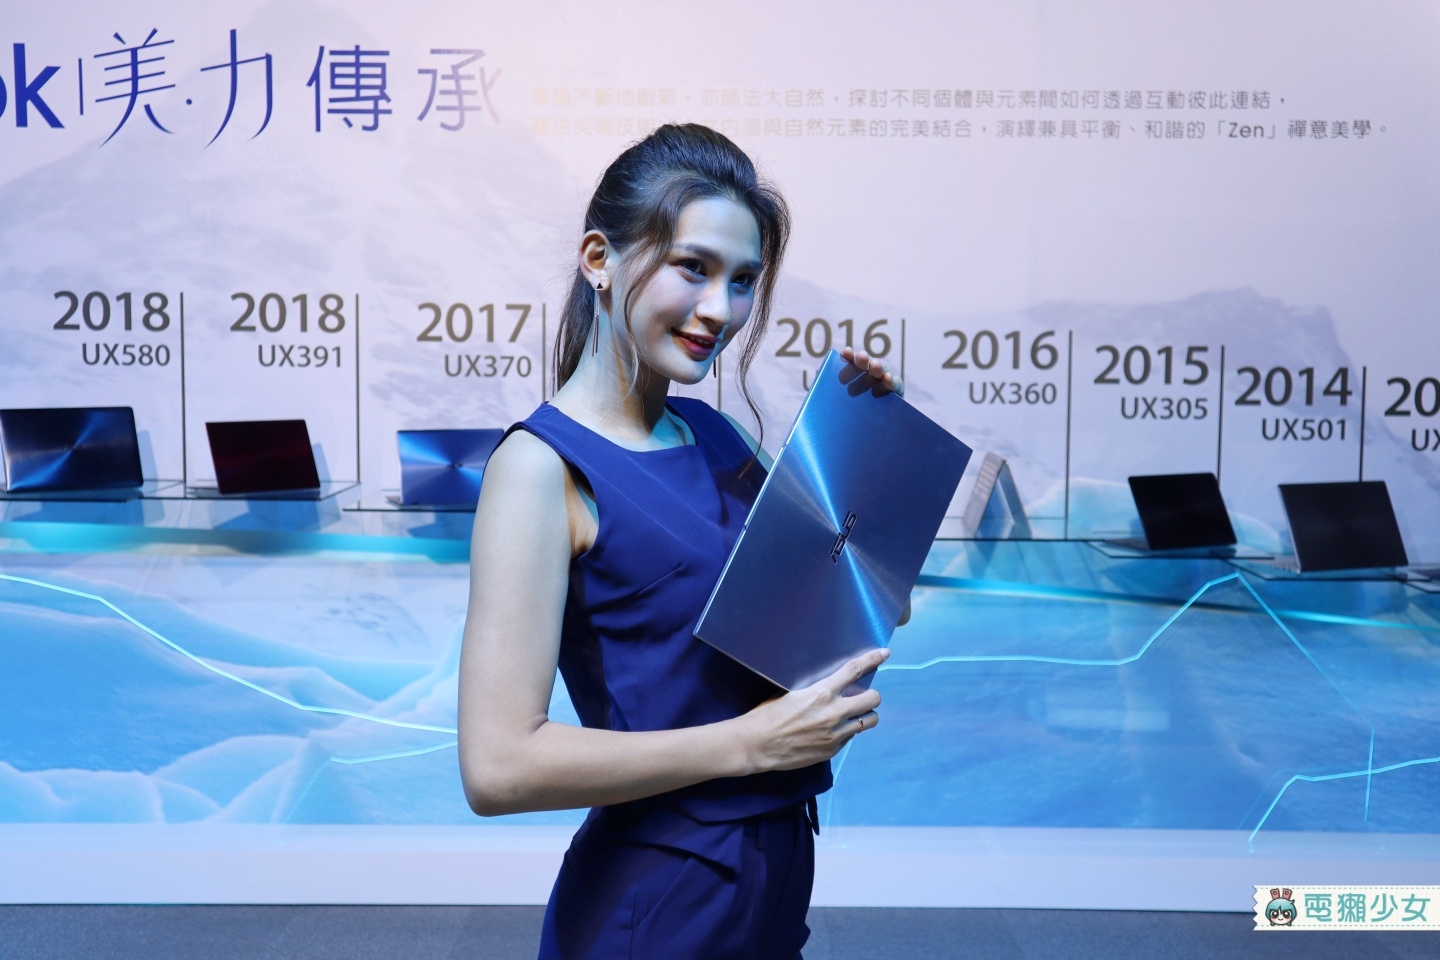 出門｜最新ZenBook S13推出！97%超高屏占比、僅1.1公斤 挑戰美力極限